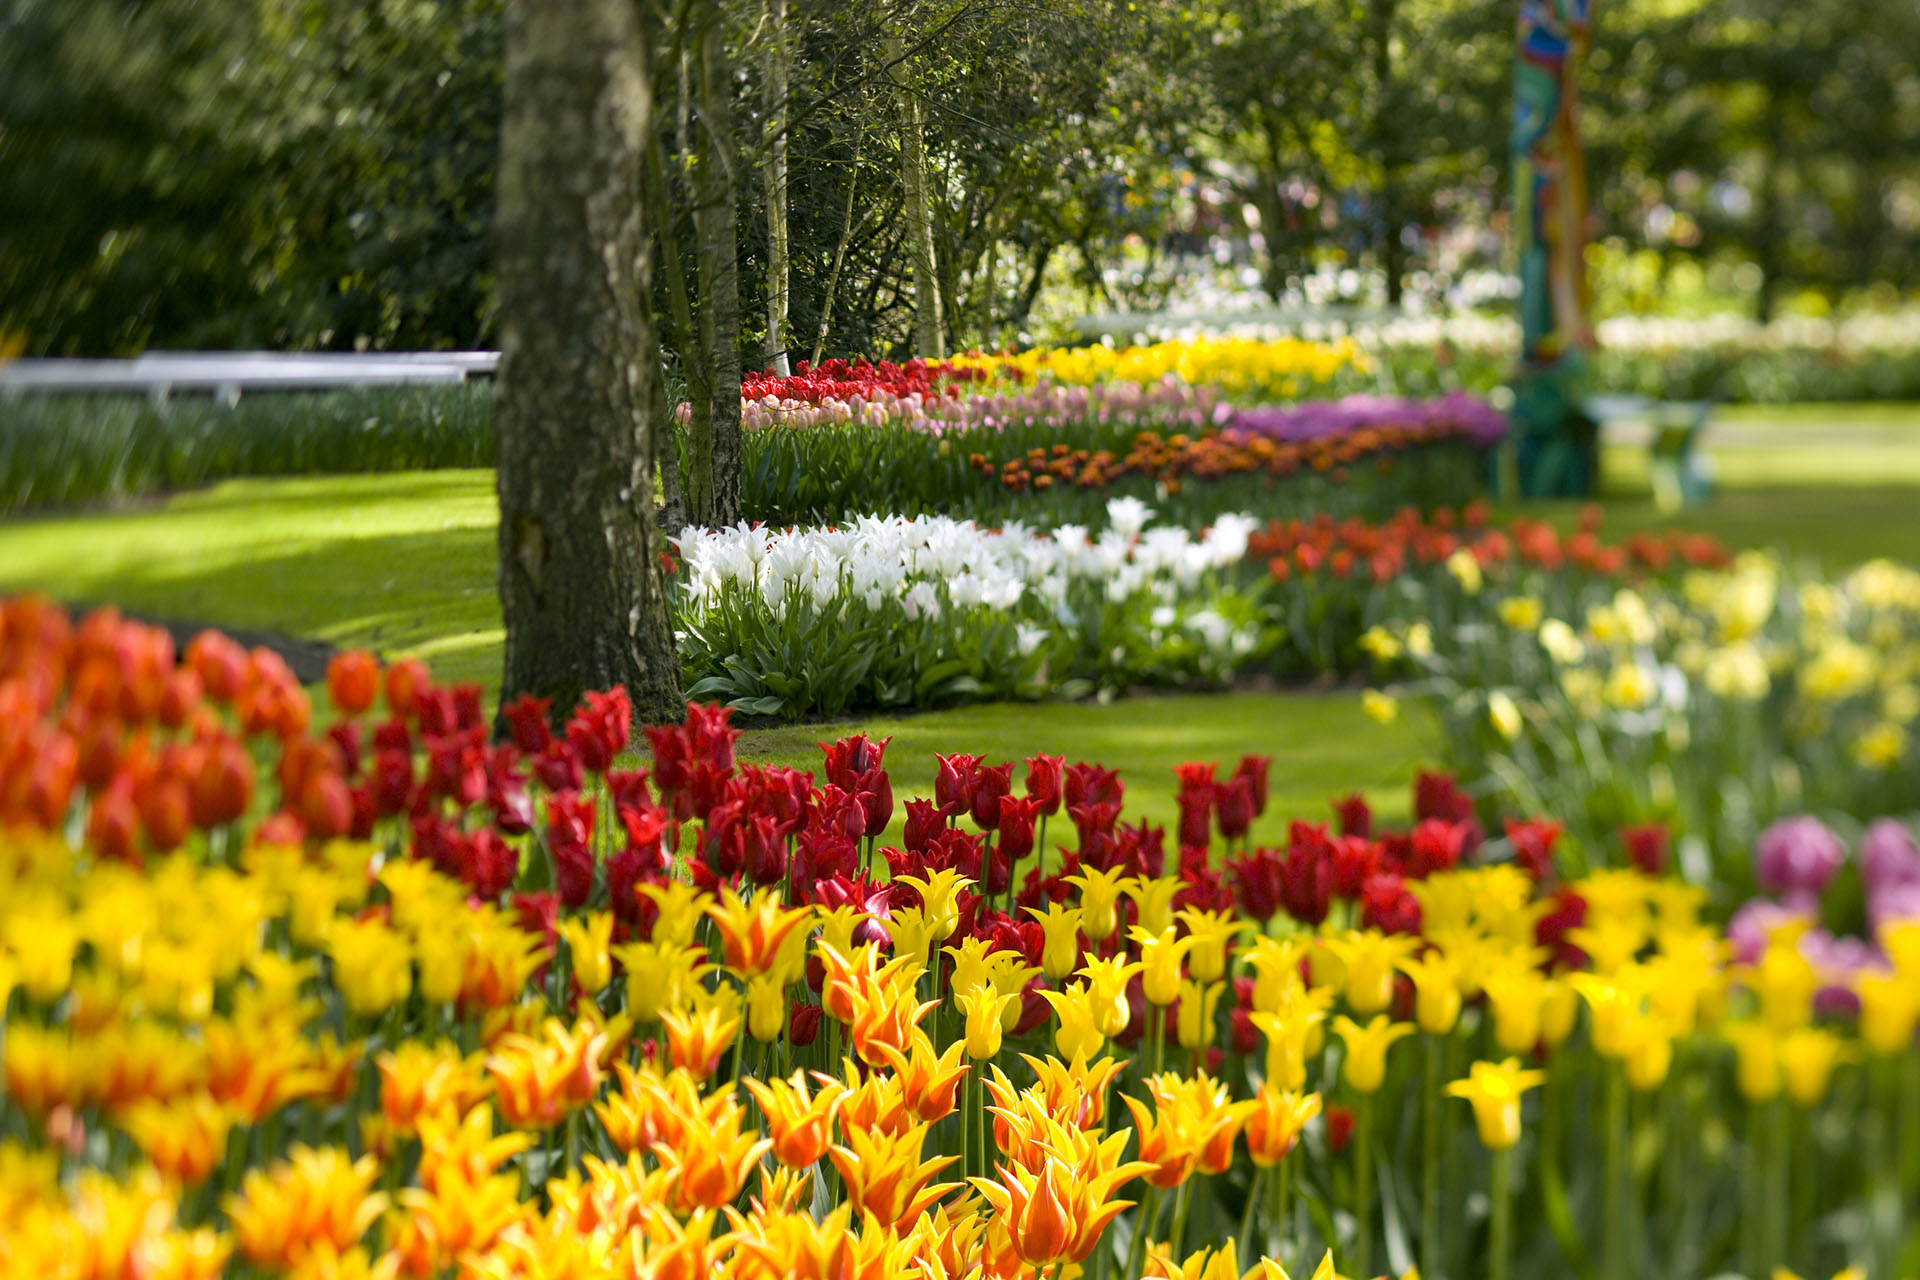 Comienza la primavera y con ella las flores nos llenan de colores y aromas (Thierry Tronnel/Corbis via Getty Images)